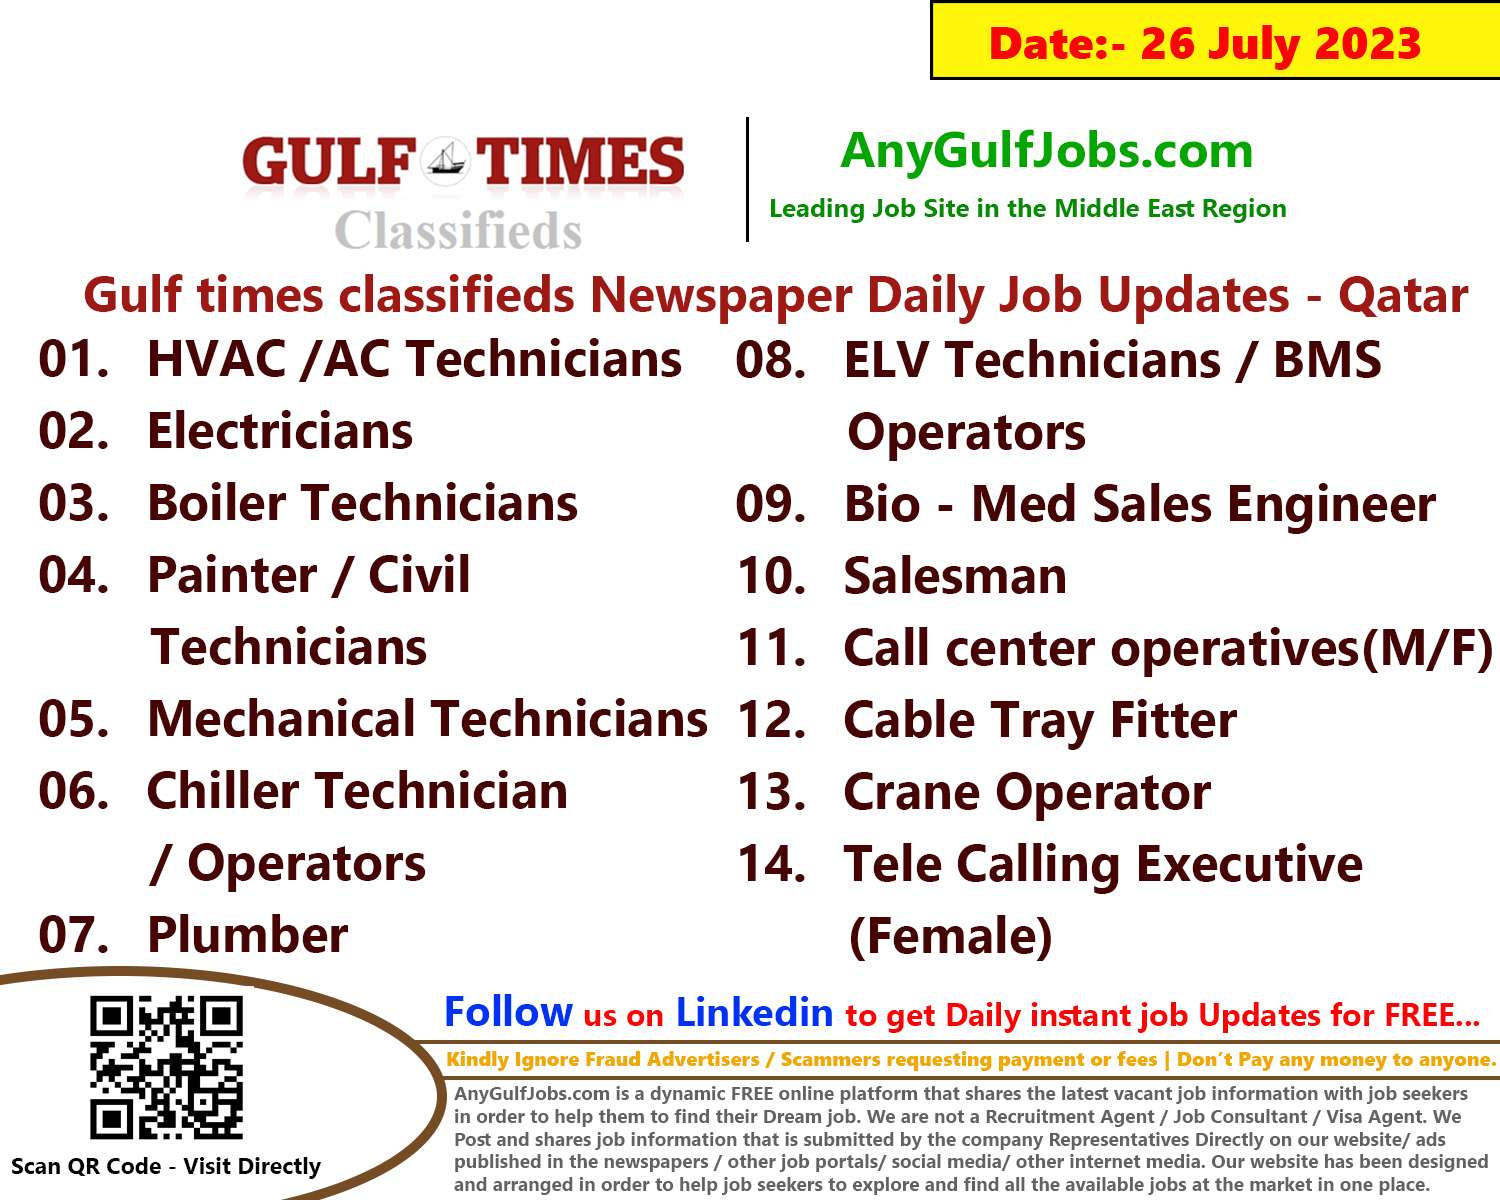 Gulf times classifieds Job Vacancies Qatar - 26 July 2023